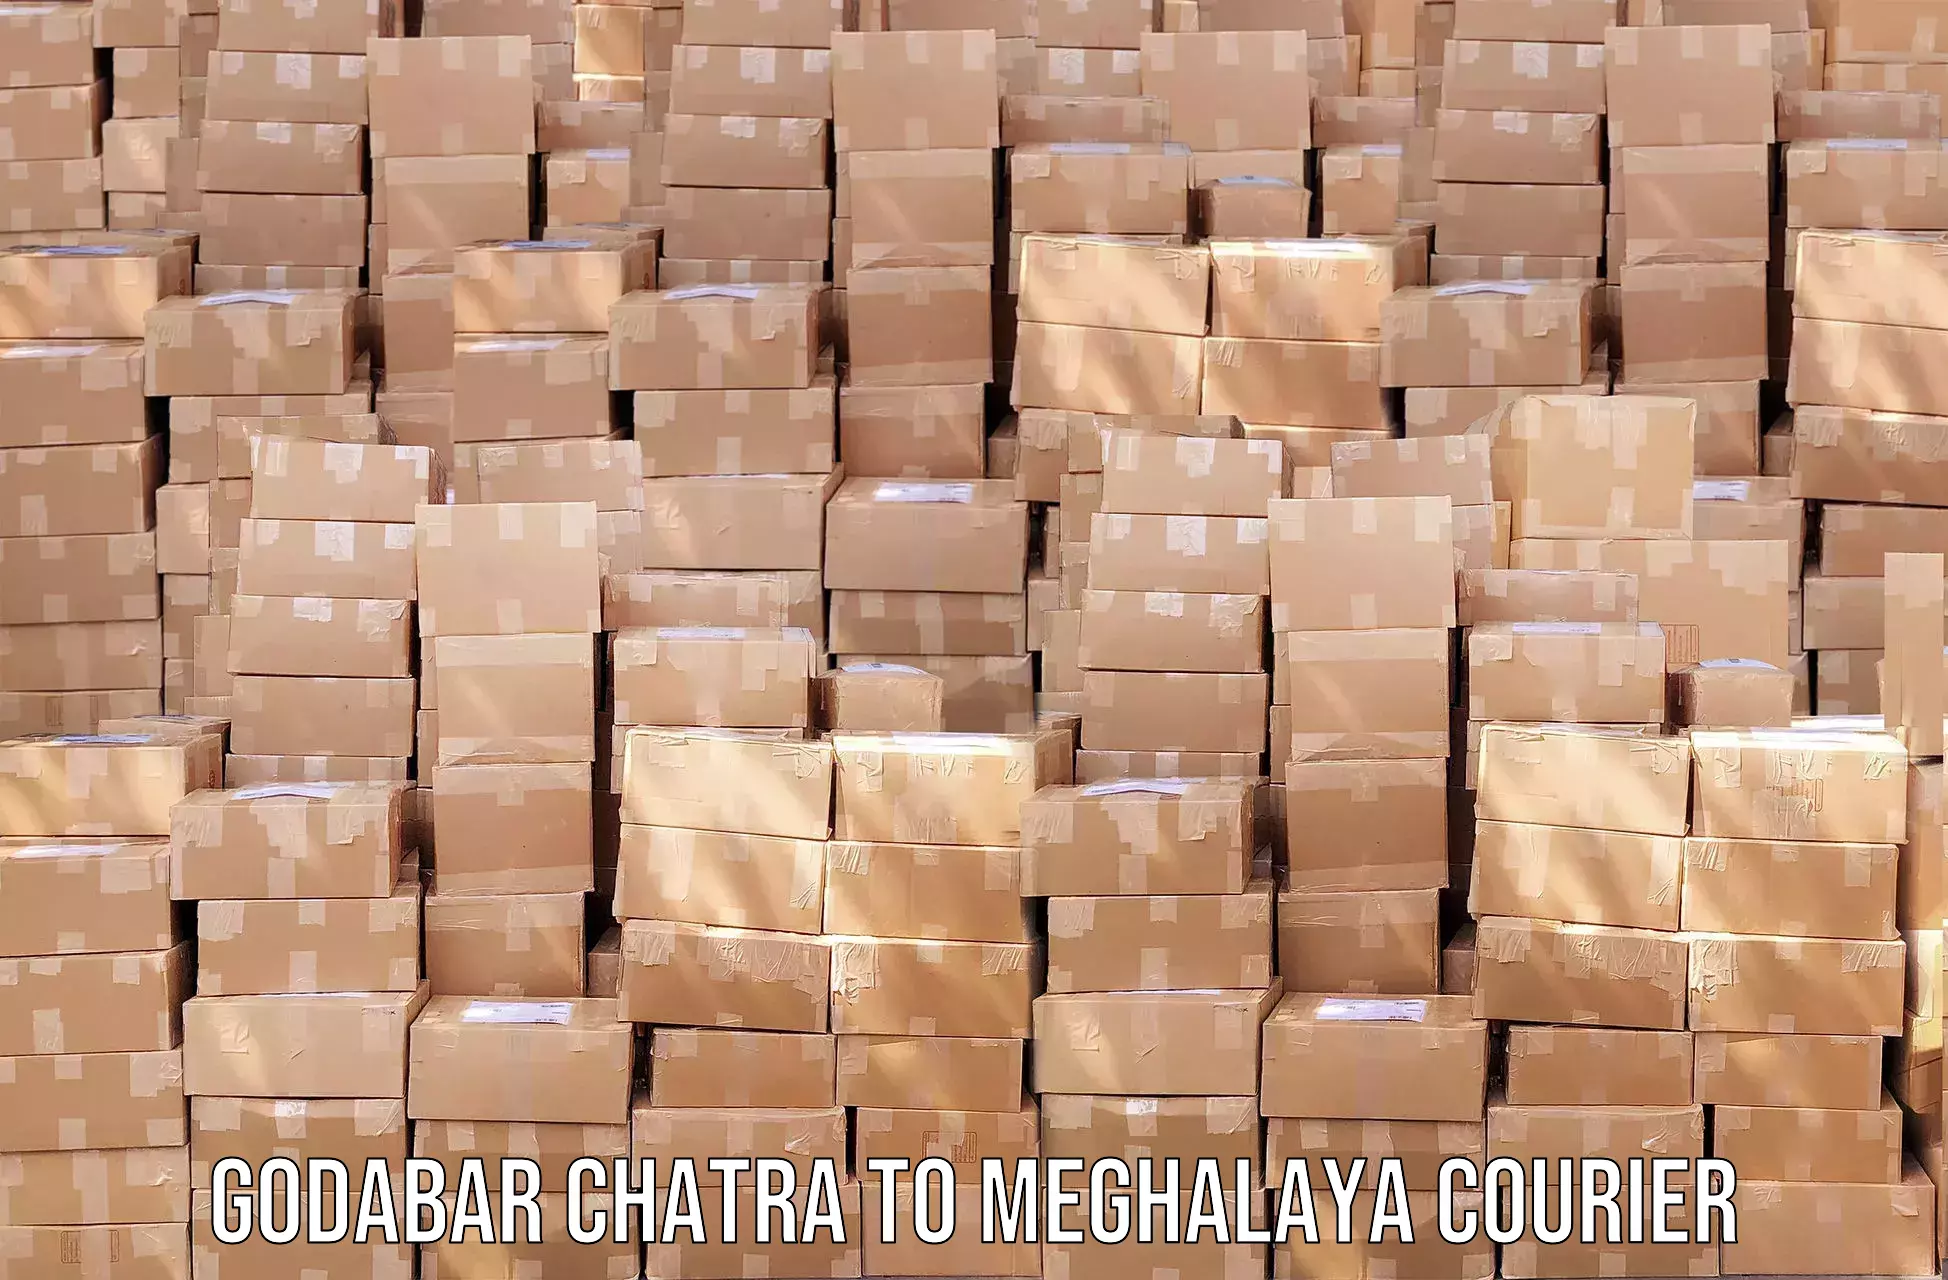 Efficient cargo services Godabar Chatra to Tura